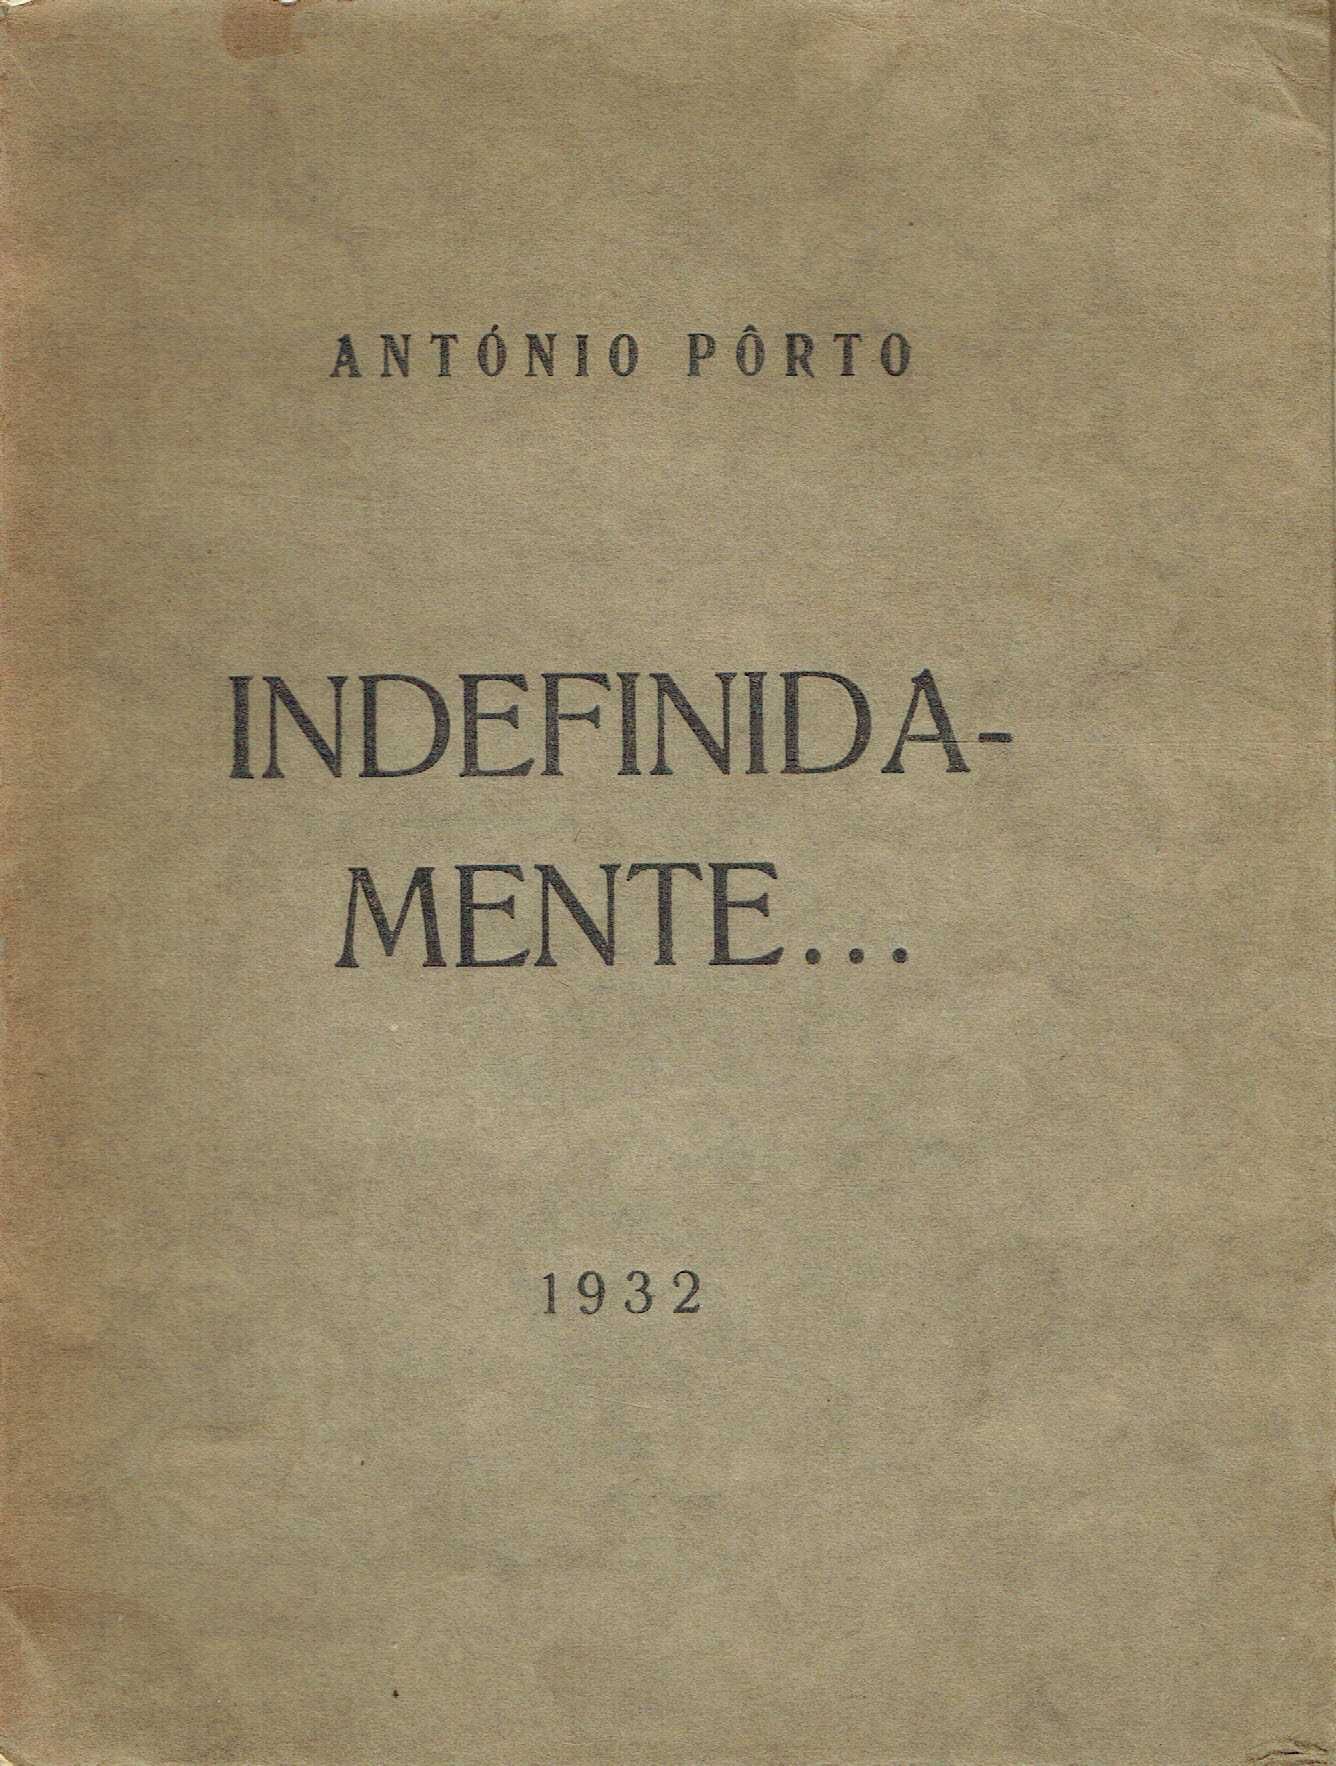 14765

Indefinidamente .. Autografado
de António Porto